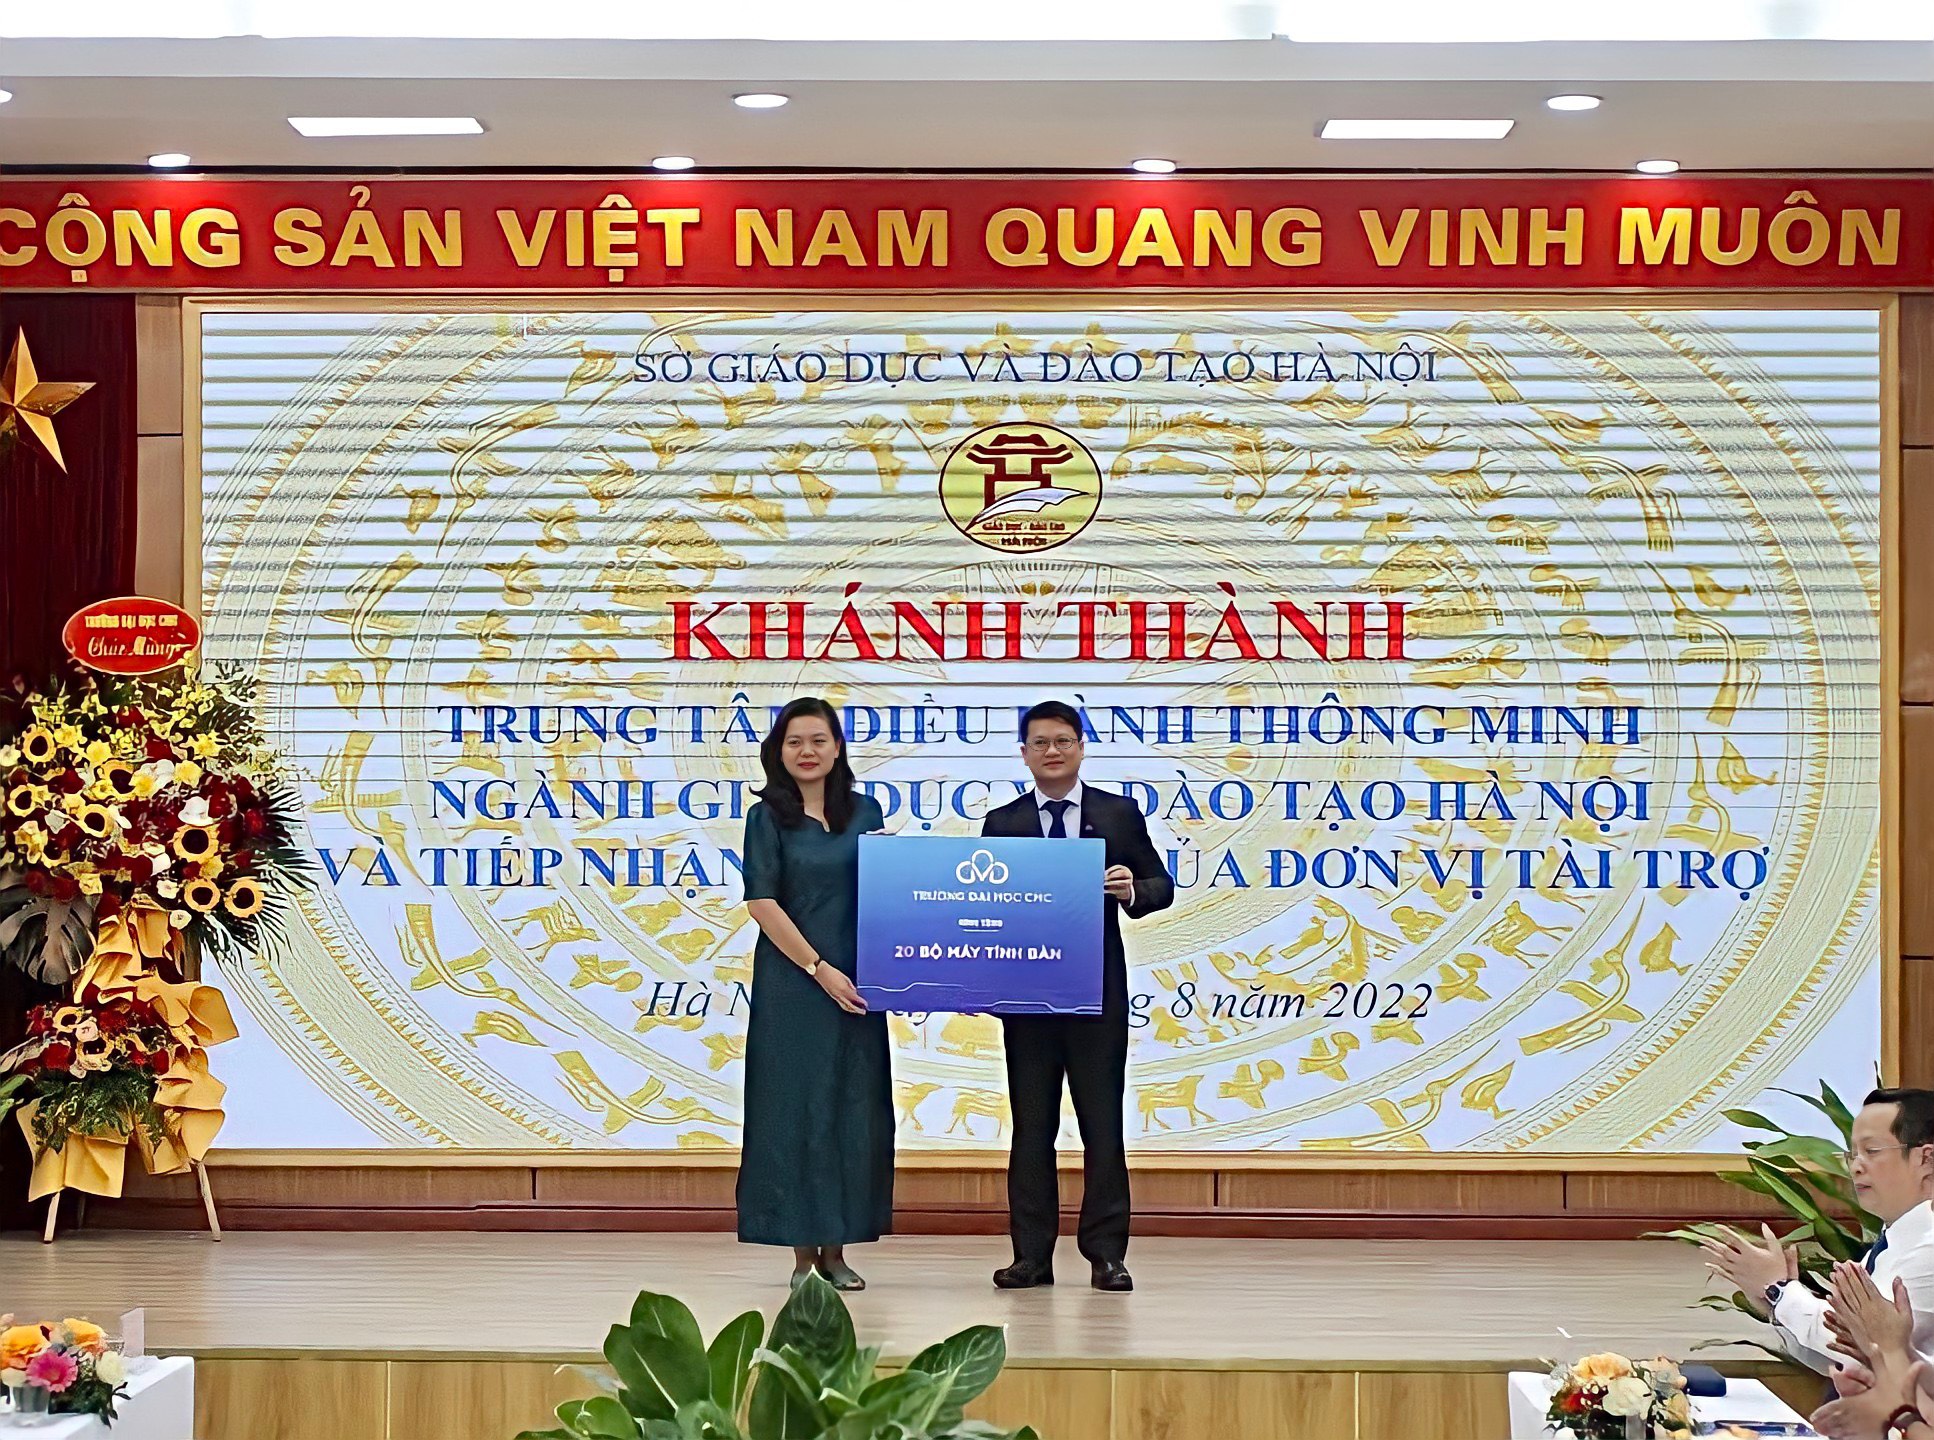 Trường Đại học CMC trao tặng 20 máy tính bàn tại Lễ khánh thành Trung tâm điều hành giáo dục thông minh thành phố Hà Nội